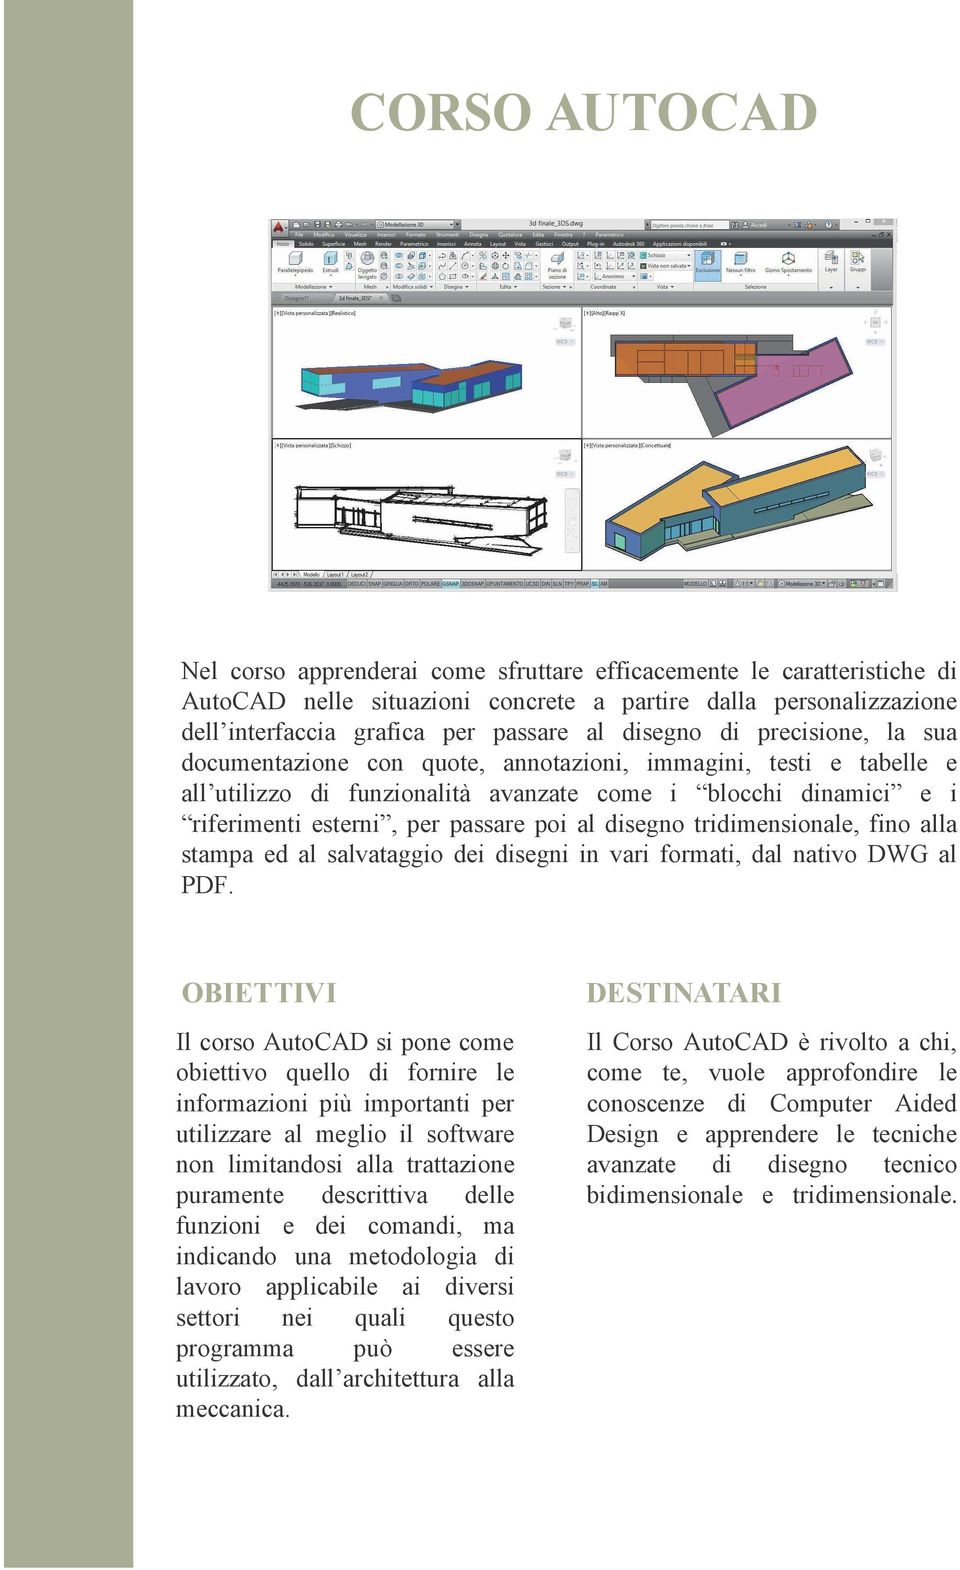 tridimensionale, fino alla stampa ed al salvataggio dei disegni in vari formati, dal nativo DWG al PDF.